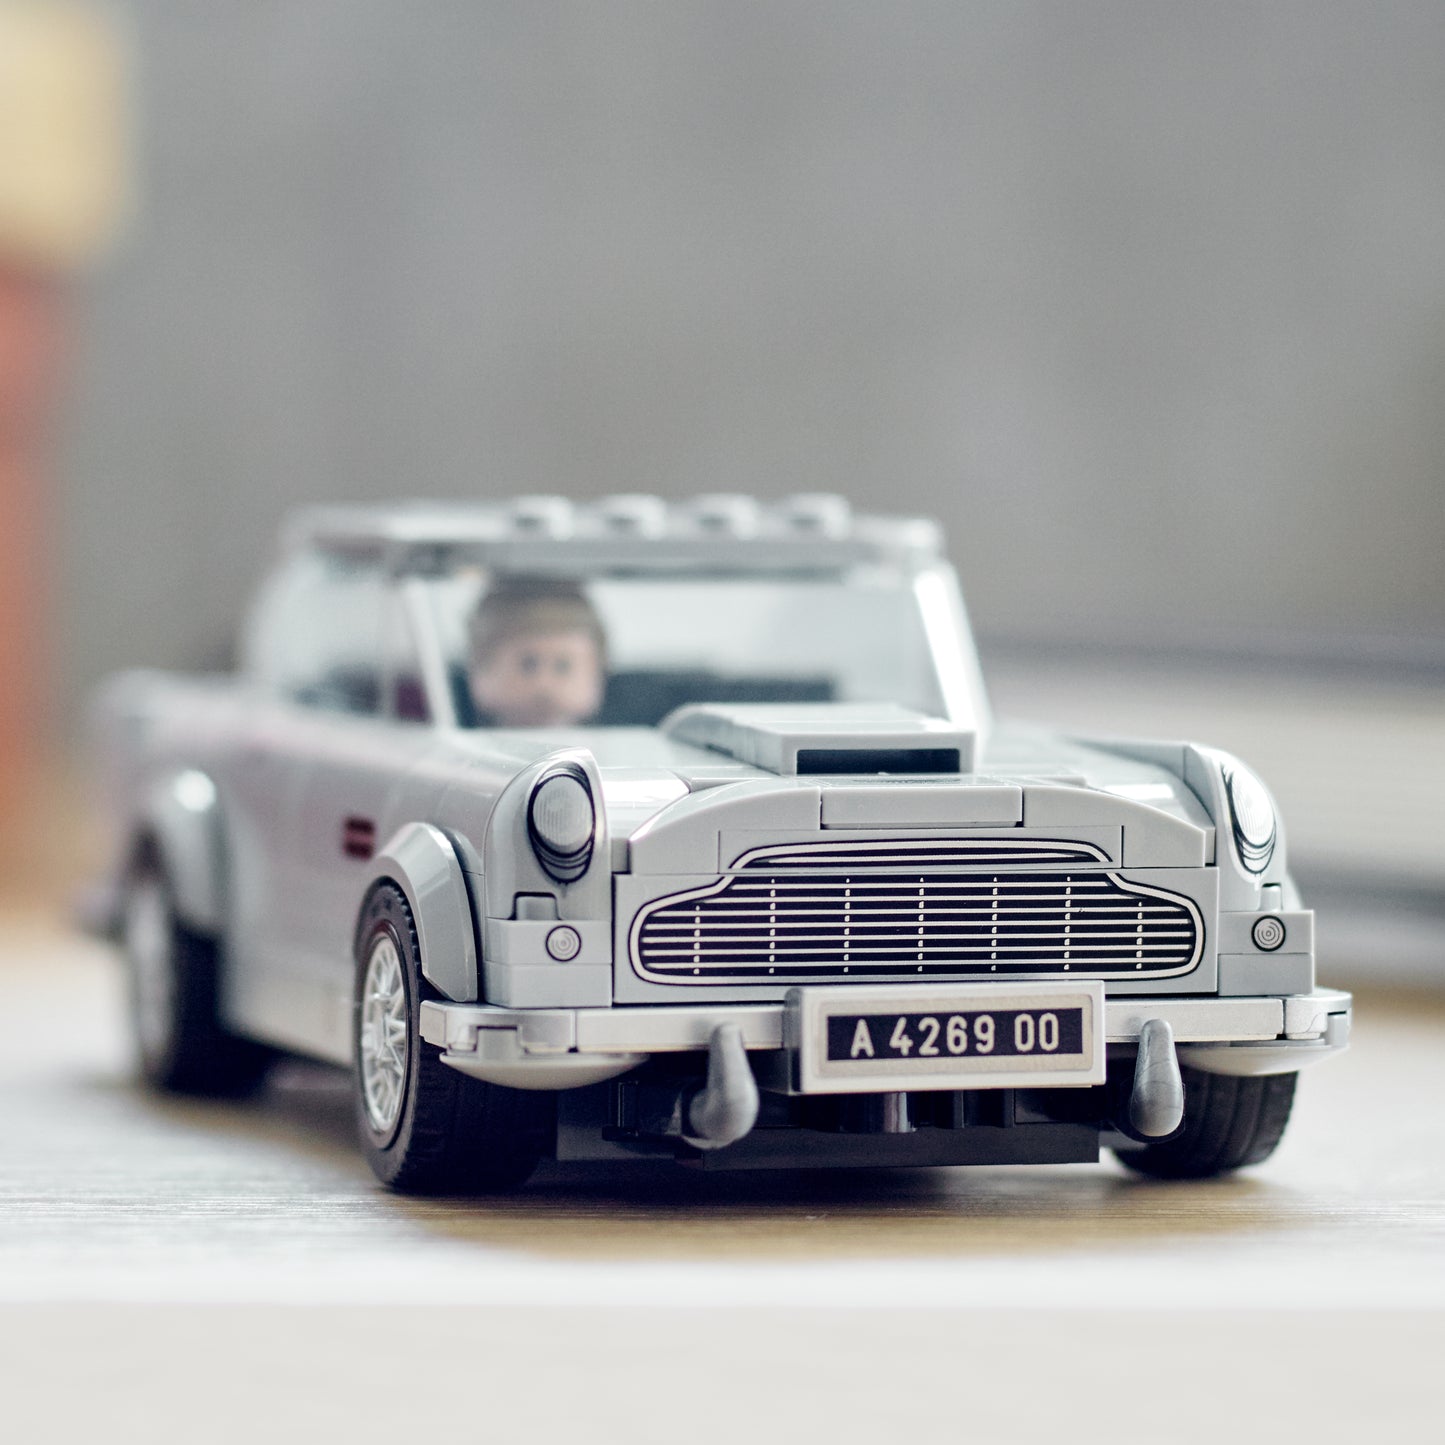 LEGO® Speed Champions 76911 007 Aston Martin DB5 - kleine Delle an OVP